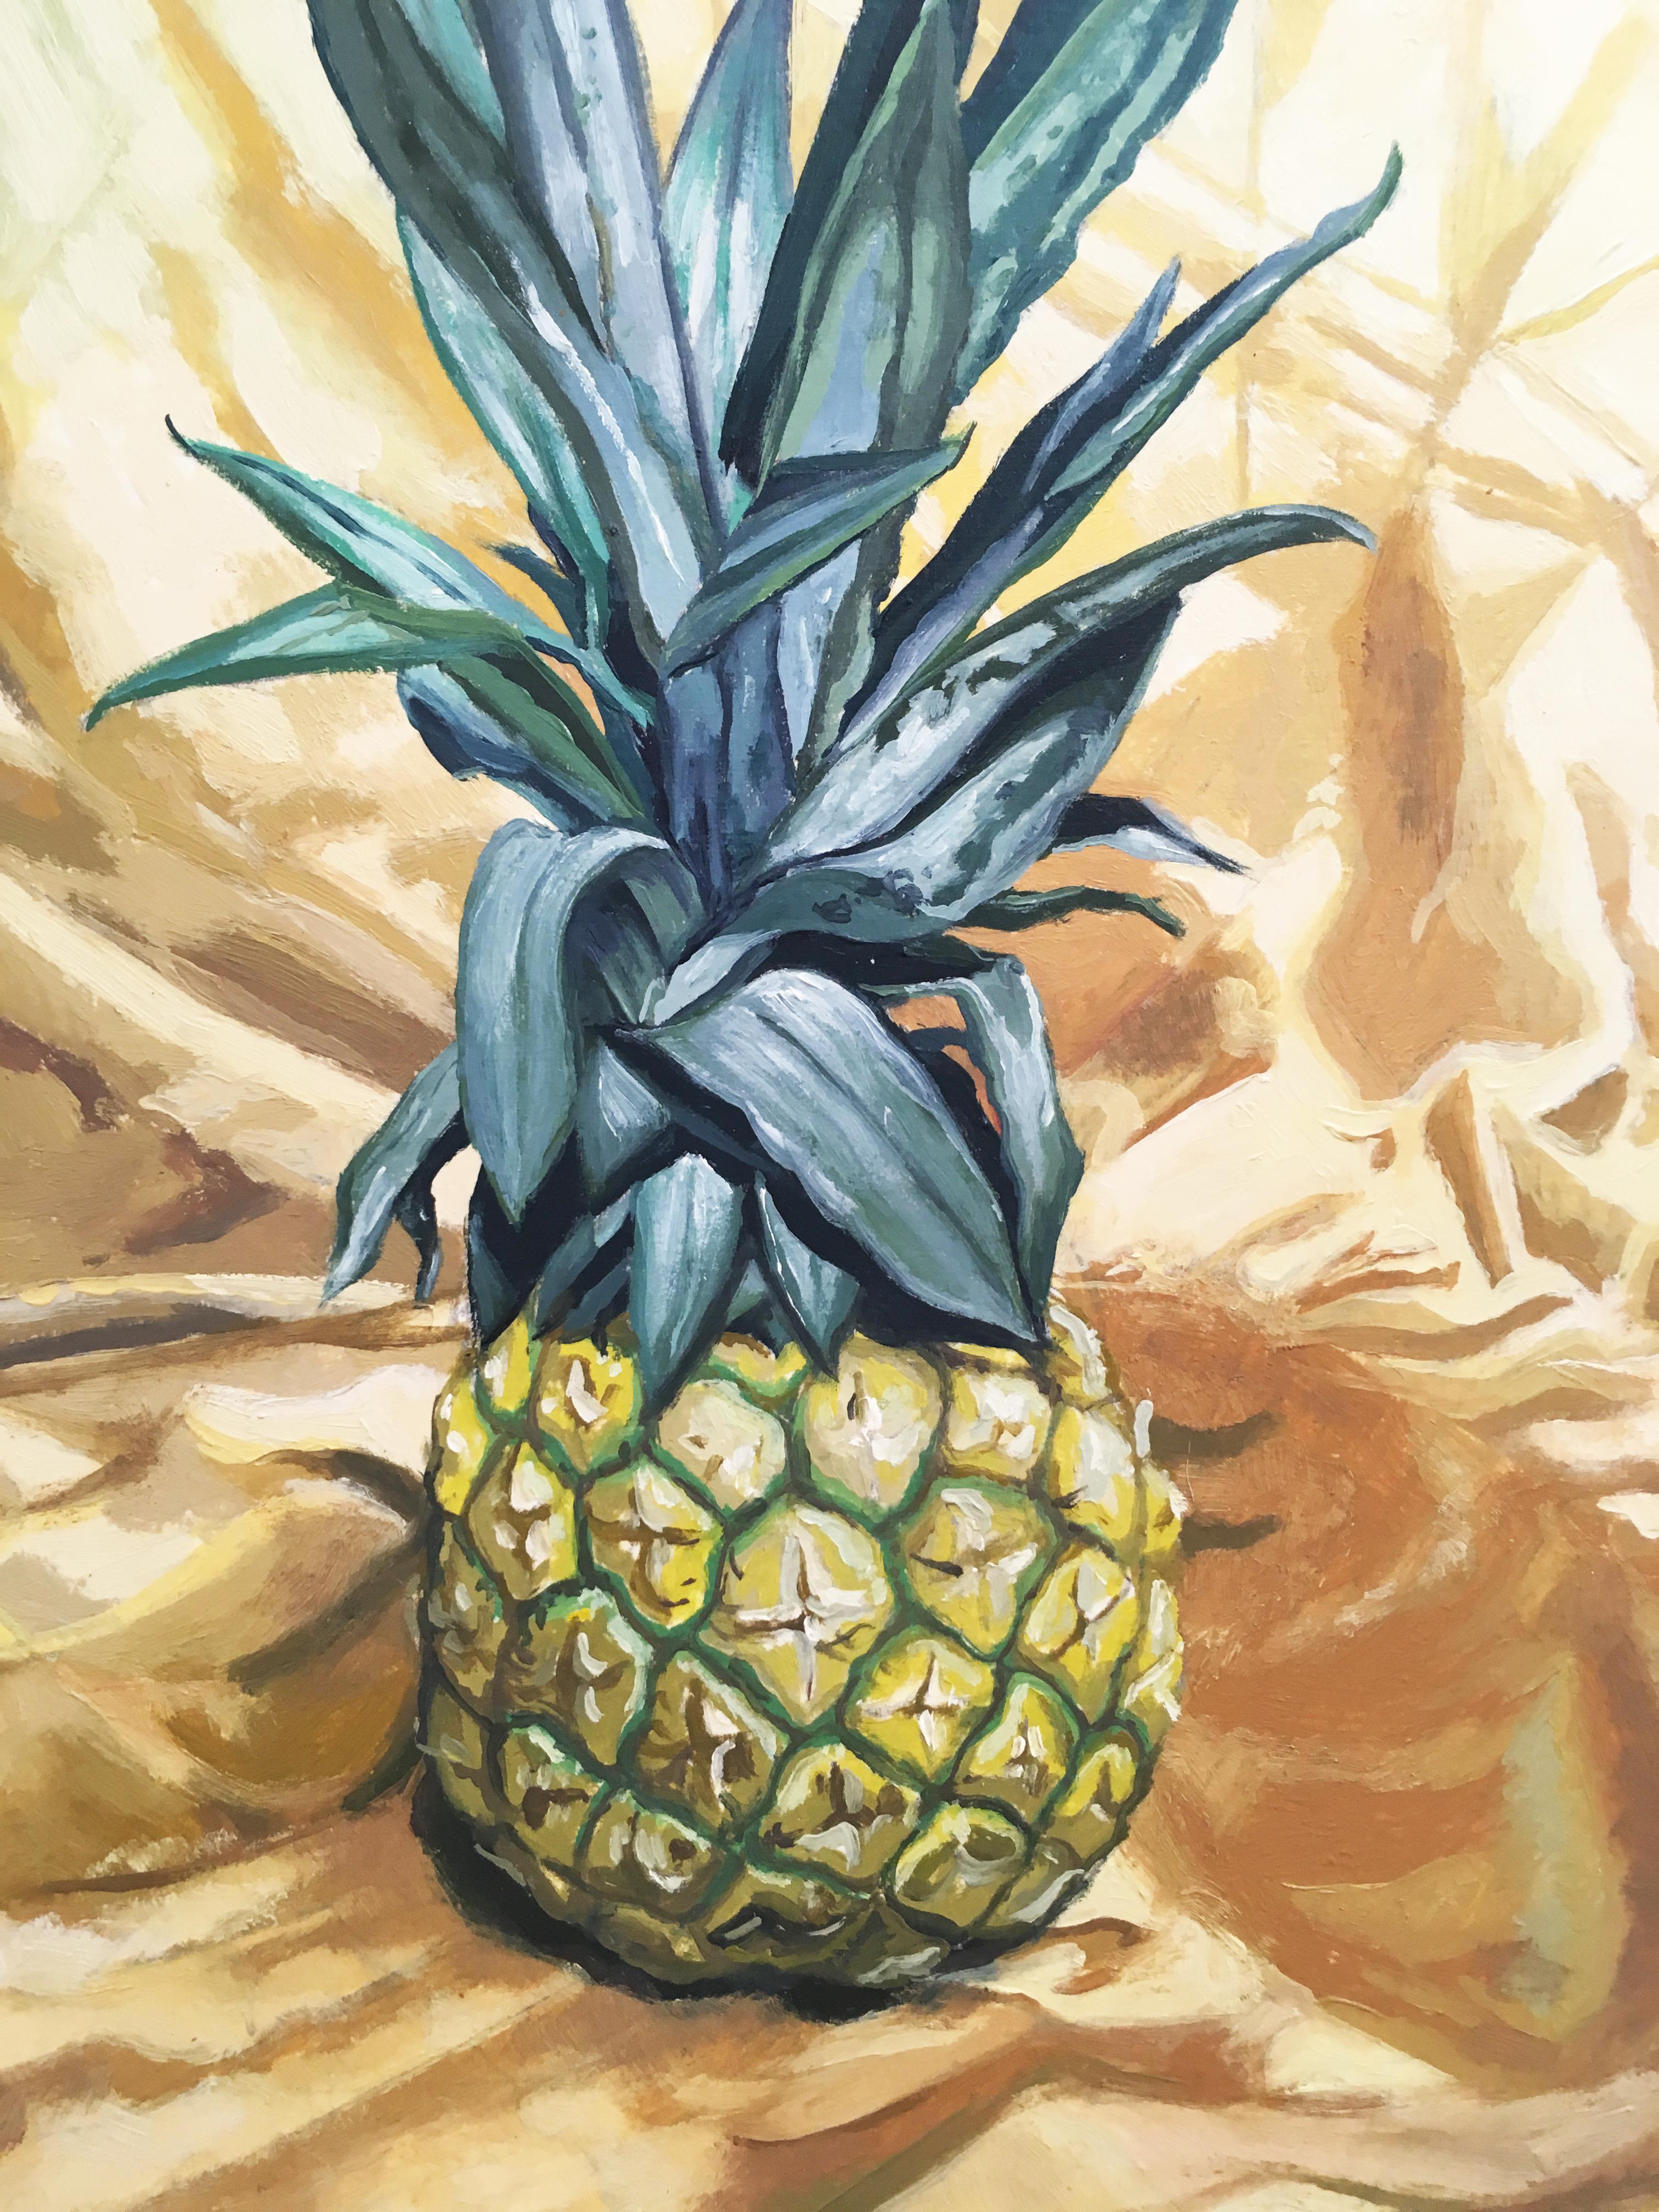 pineapple painting ideas